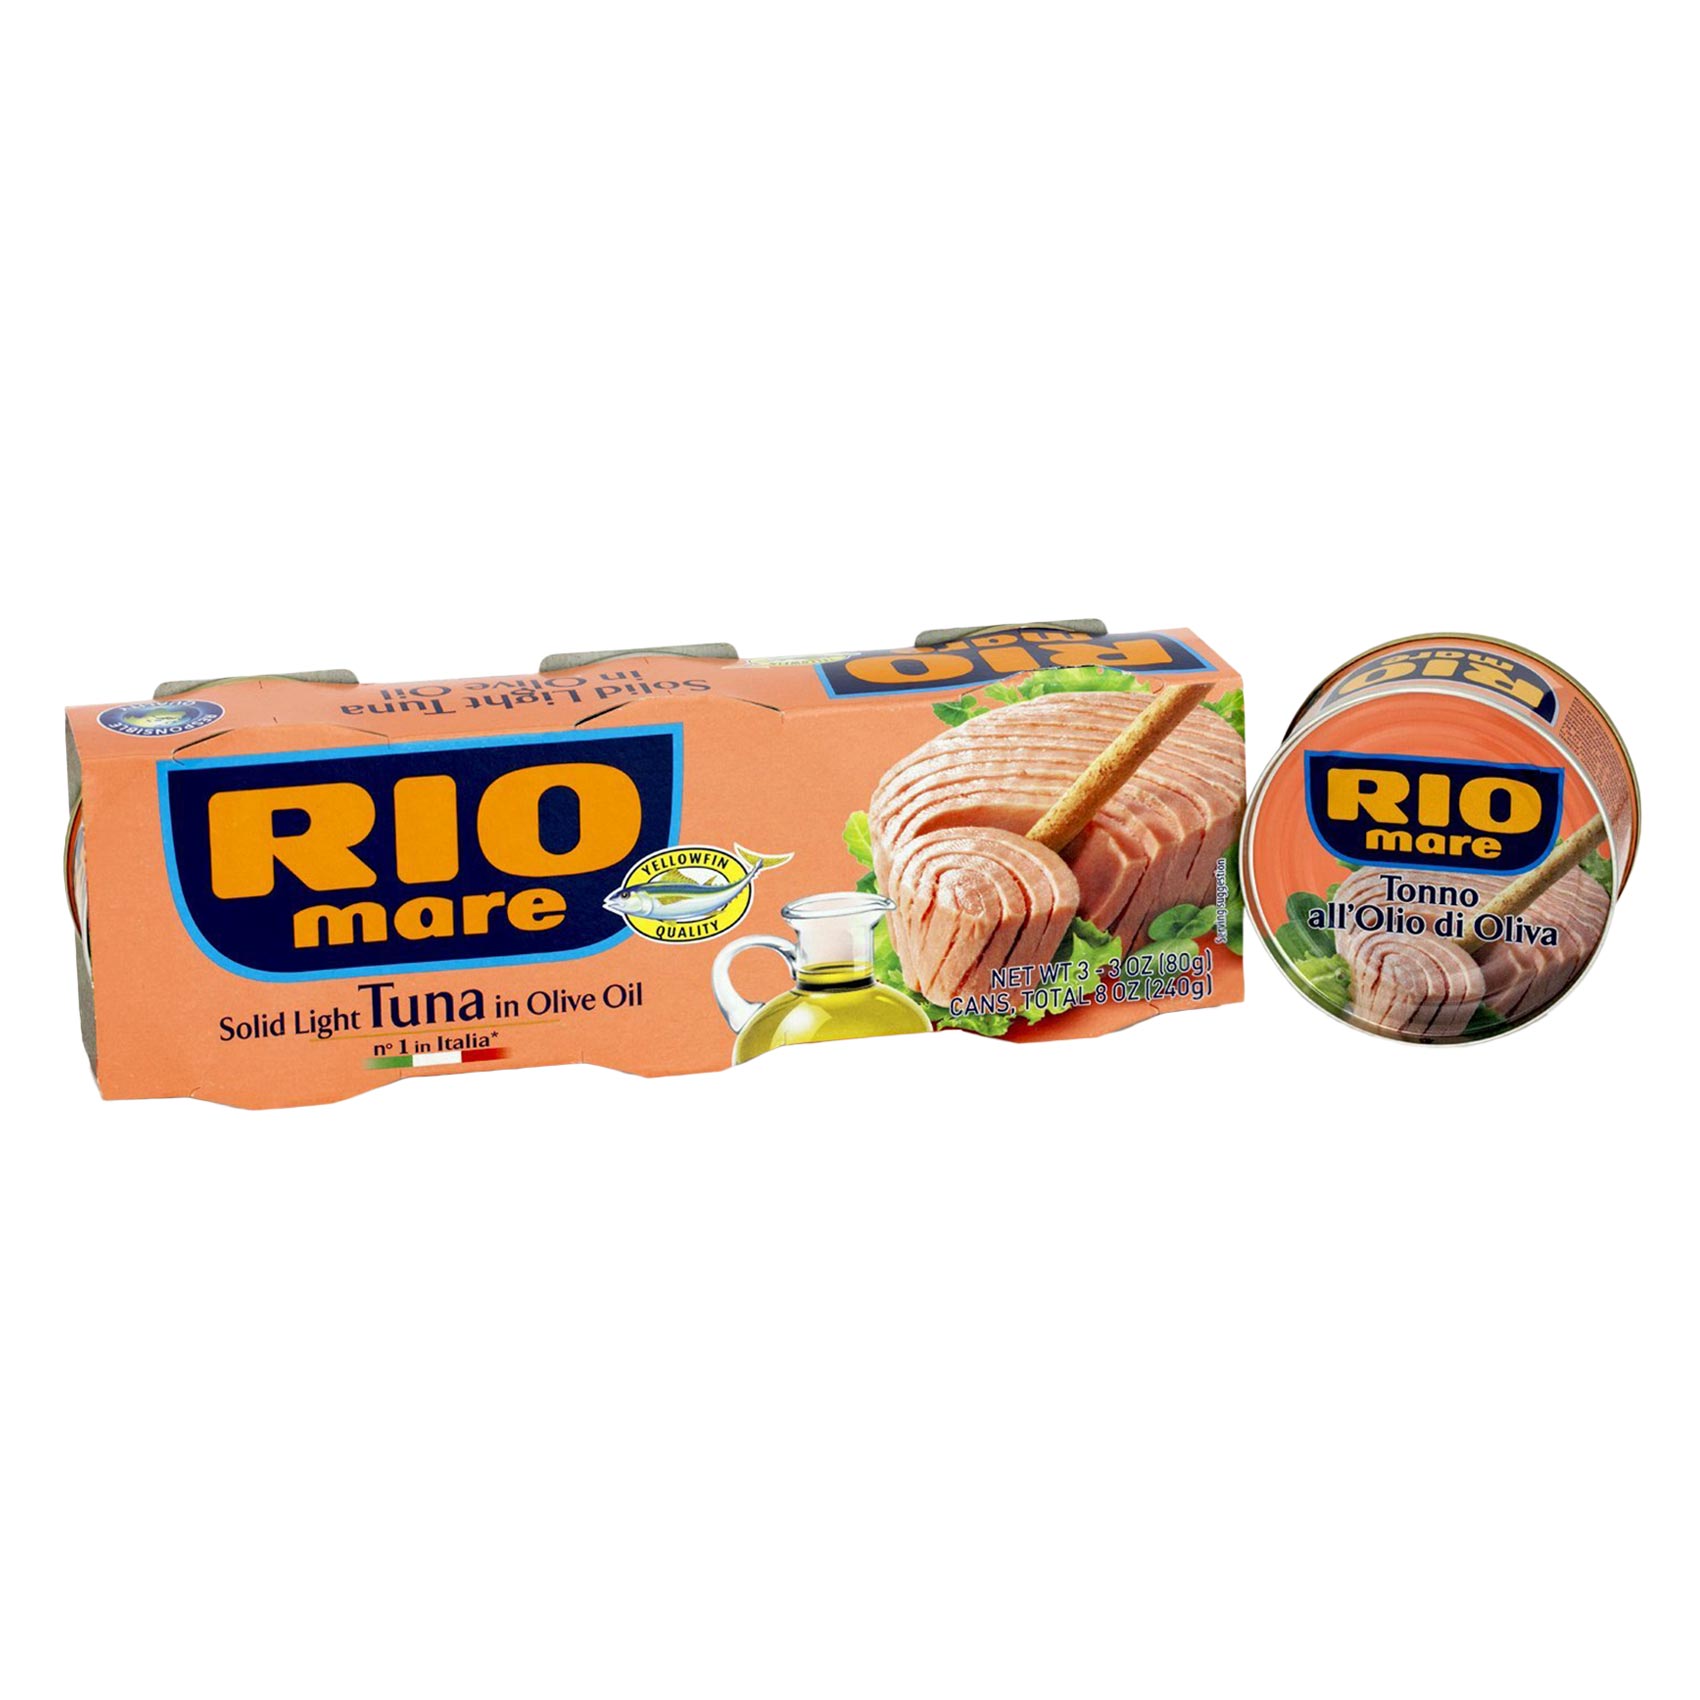 ريو ماري لحم تونة خفيف في زيت الزيتون 80 غرام حزمة من 3